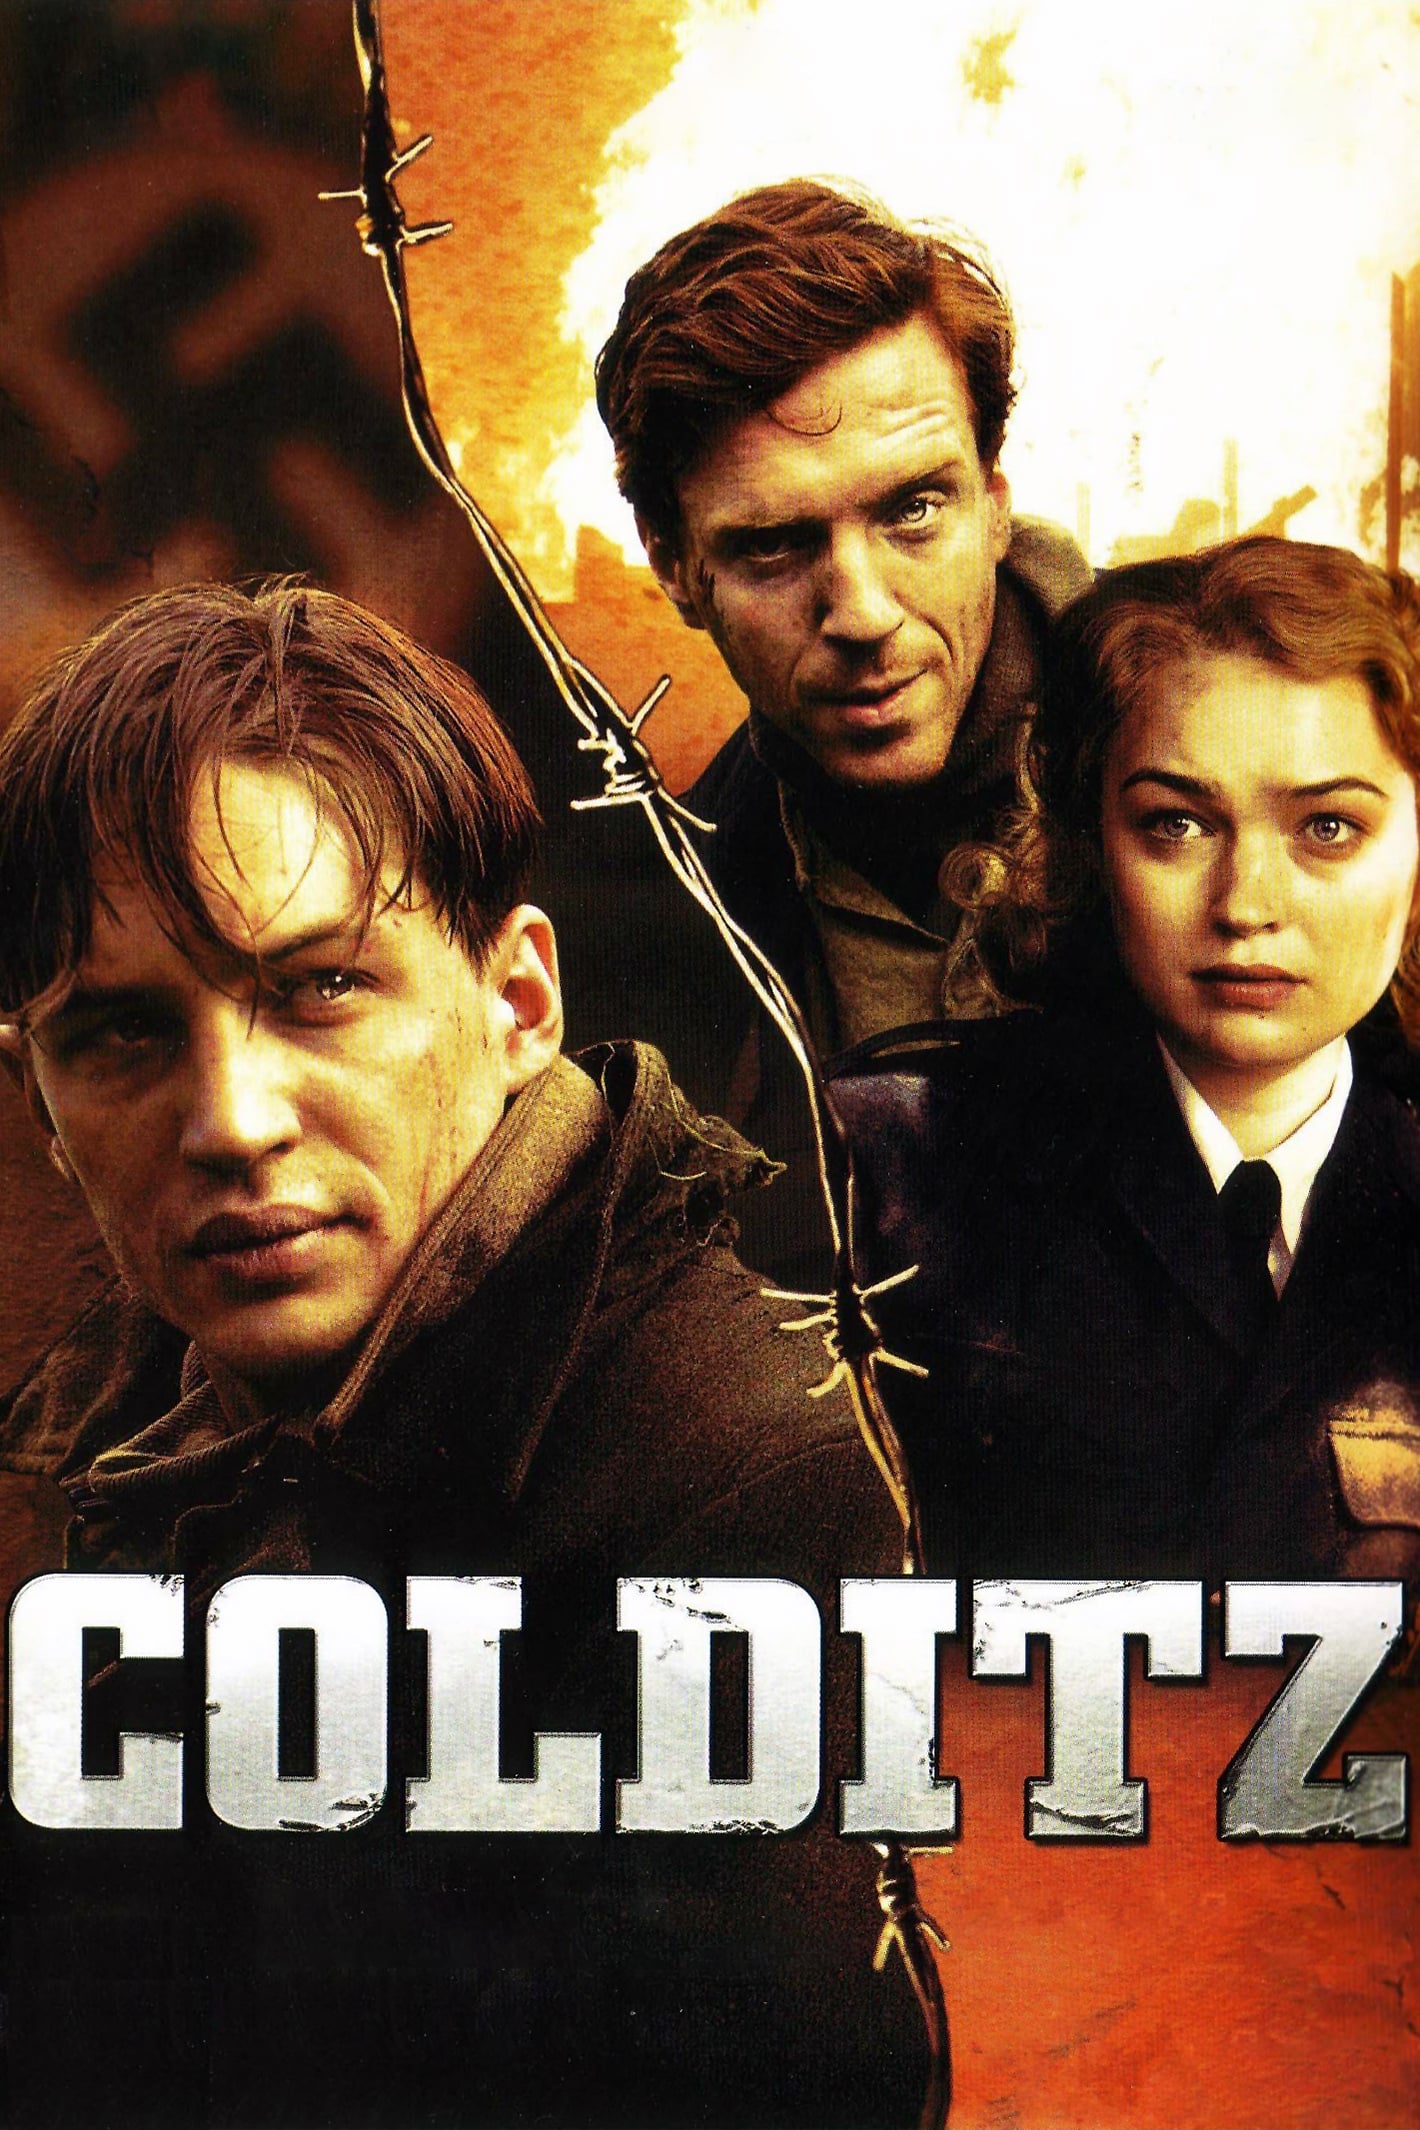 Colditz (2005)